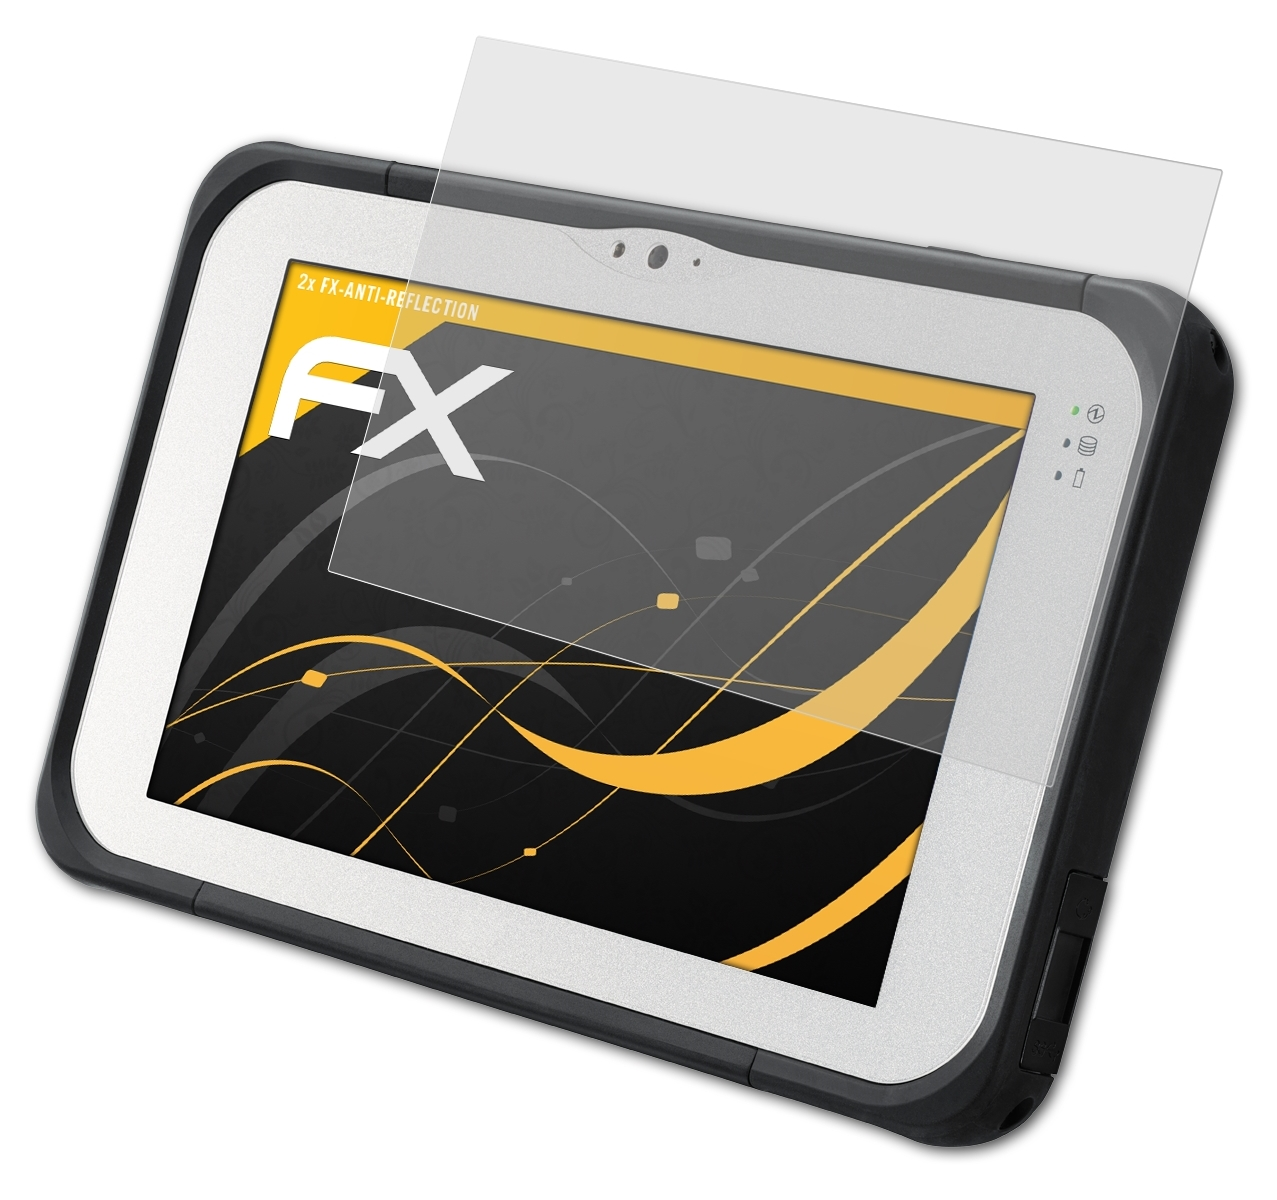 Displayschutz(für Panasonic ToughPad ATFOLIX 2x FX-Antireflex FZ-B2) FZ-M1 /